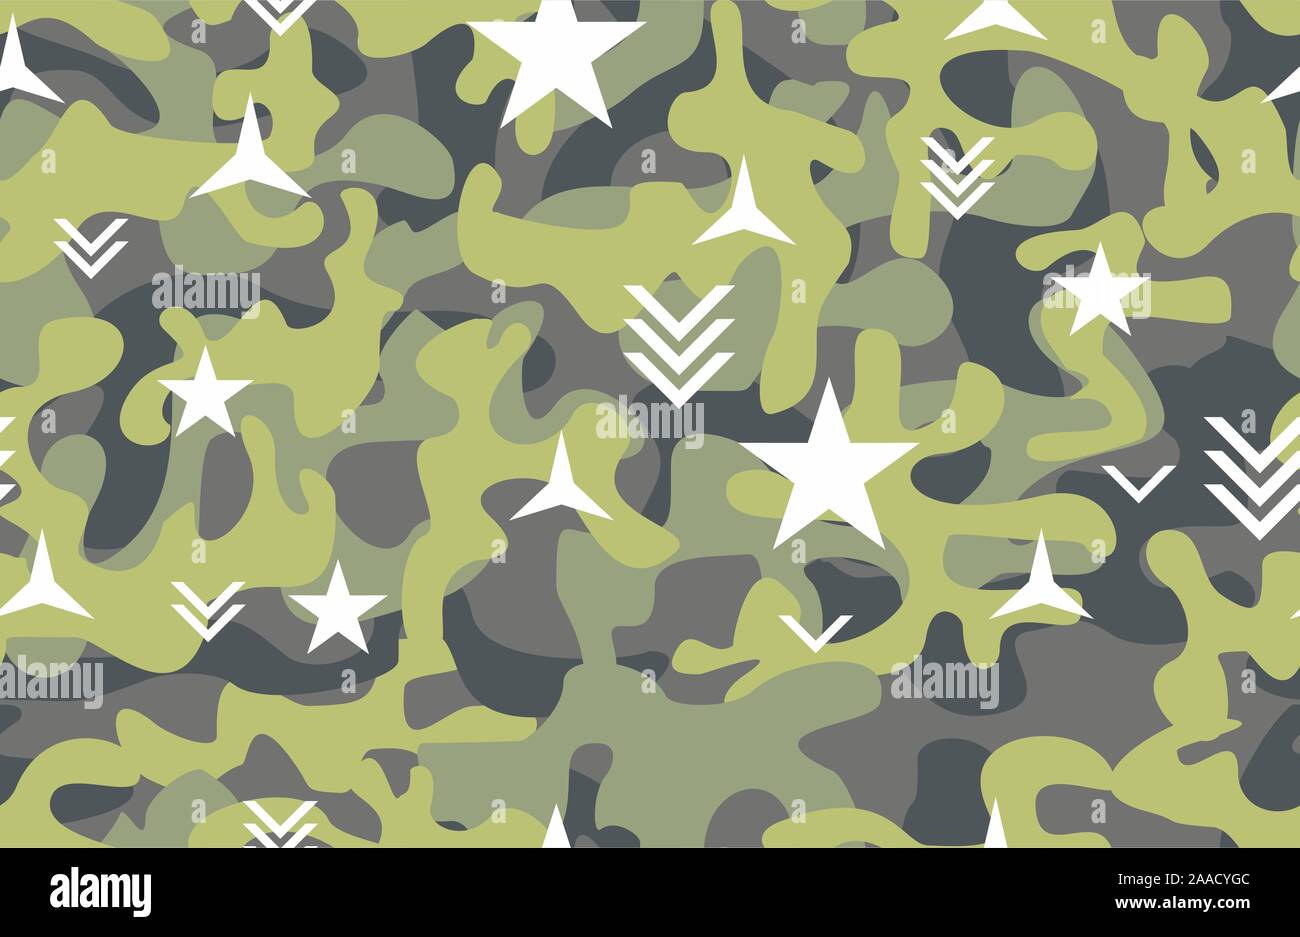 Camouflage nahtlose Muster, Uniform drucken für Gewebe, Armee, Soldat Textur Hintergrund. - Vektor Stock Vektor